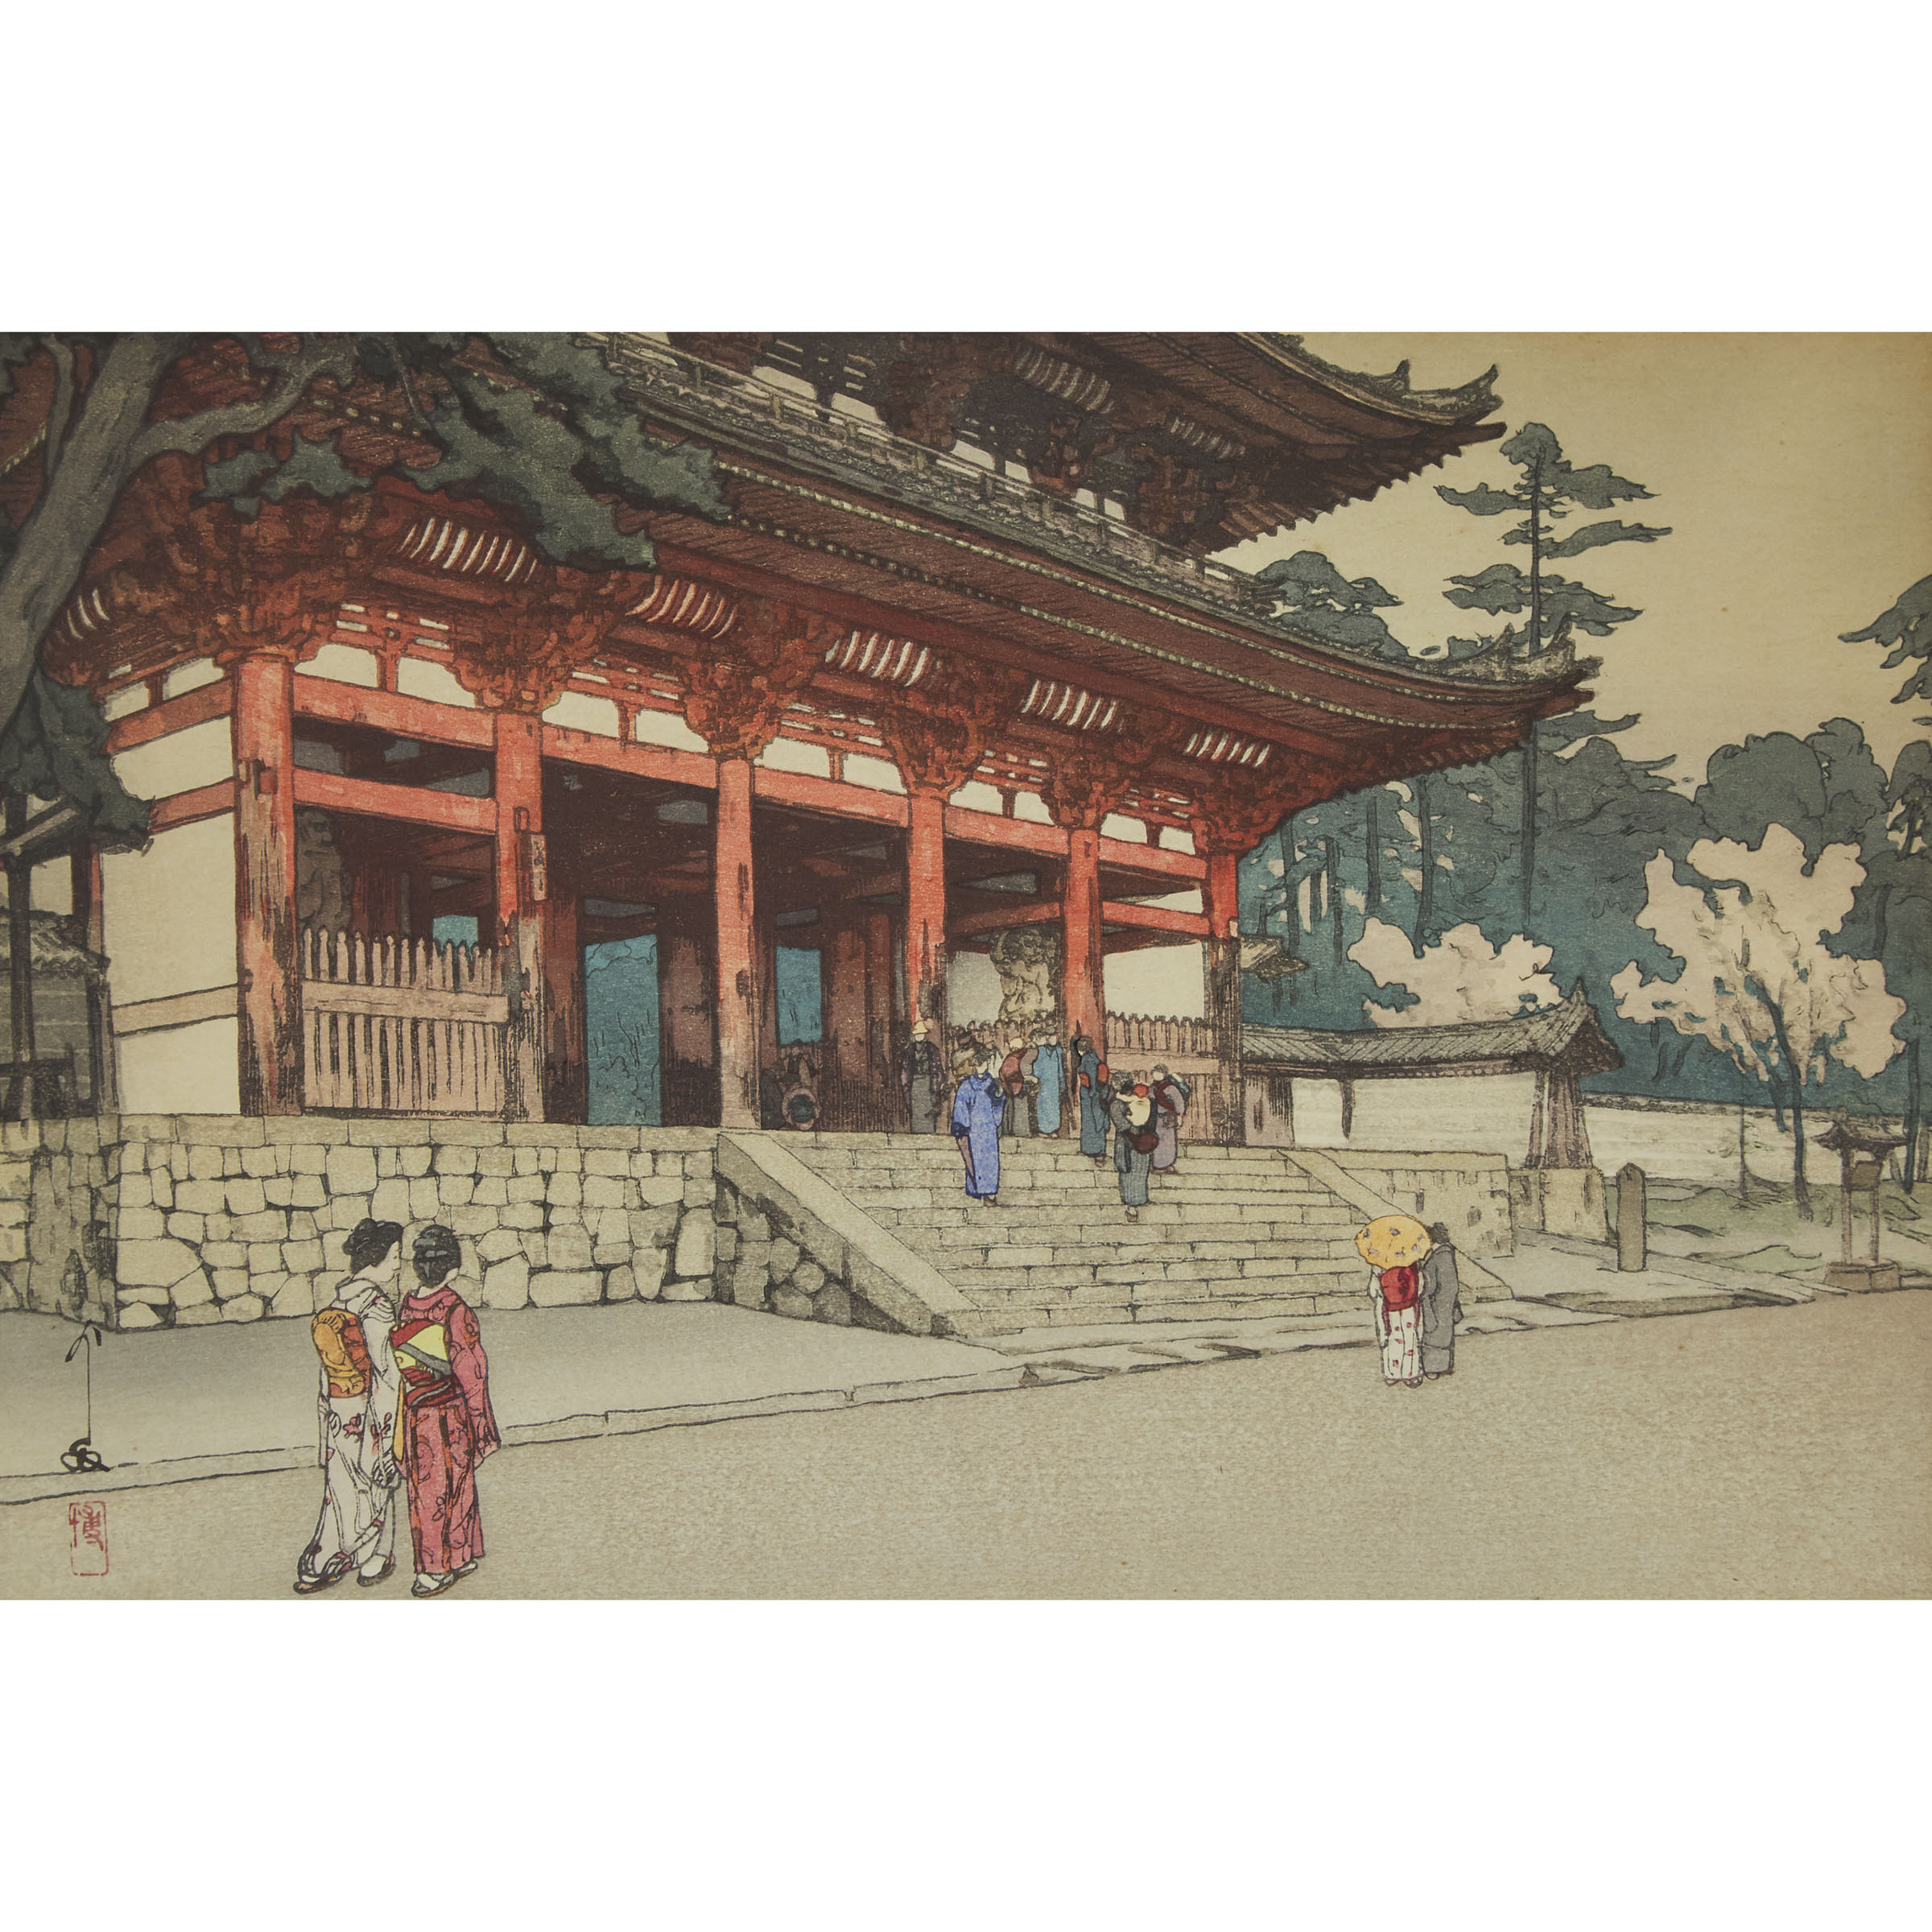 Hiroshi Yoshida (1876-1950), Omuro, 1940